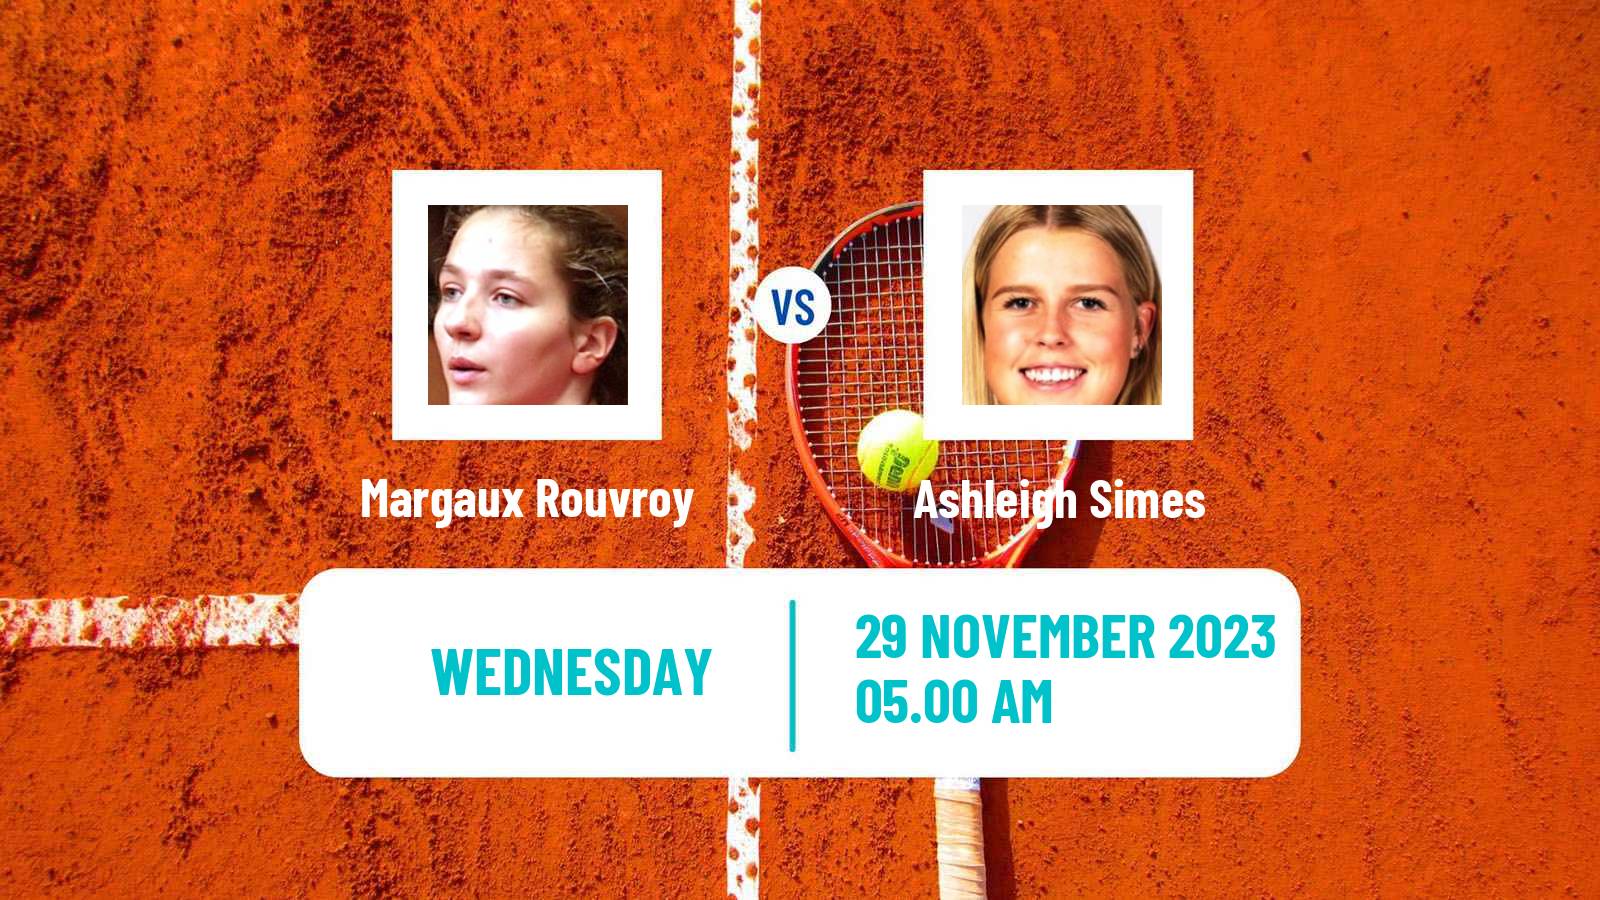 Tennis ITF W25 Lousada 2 Women Margaux Rouvroy - Ashleigh Simes